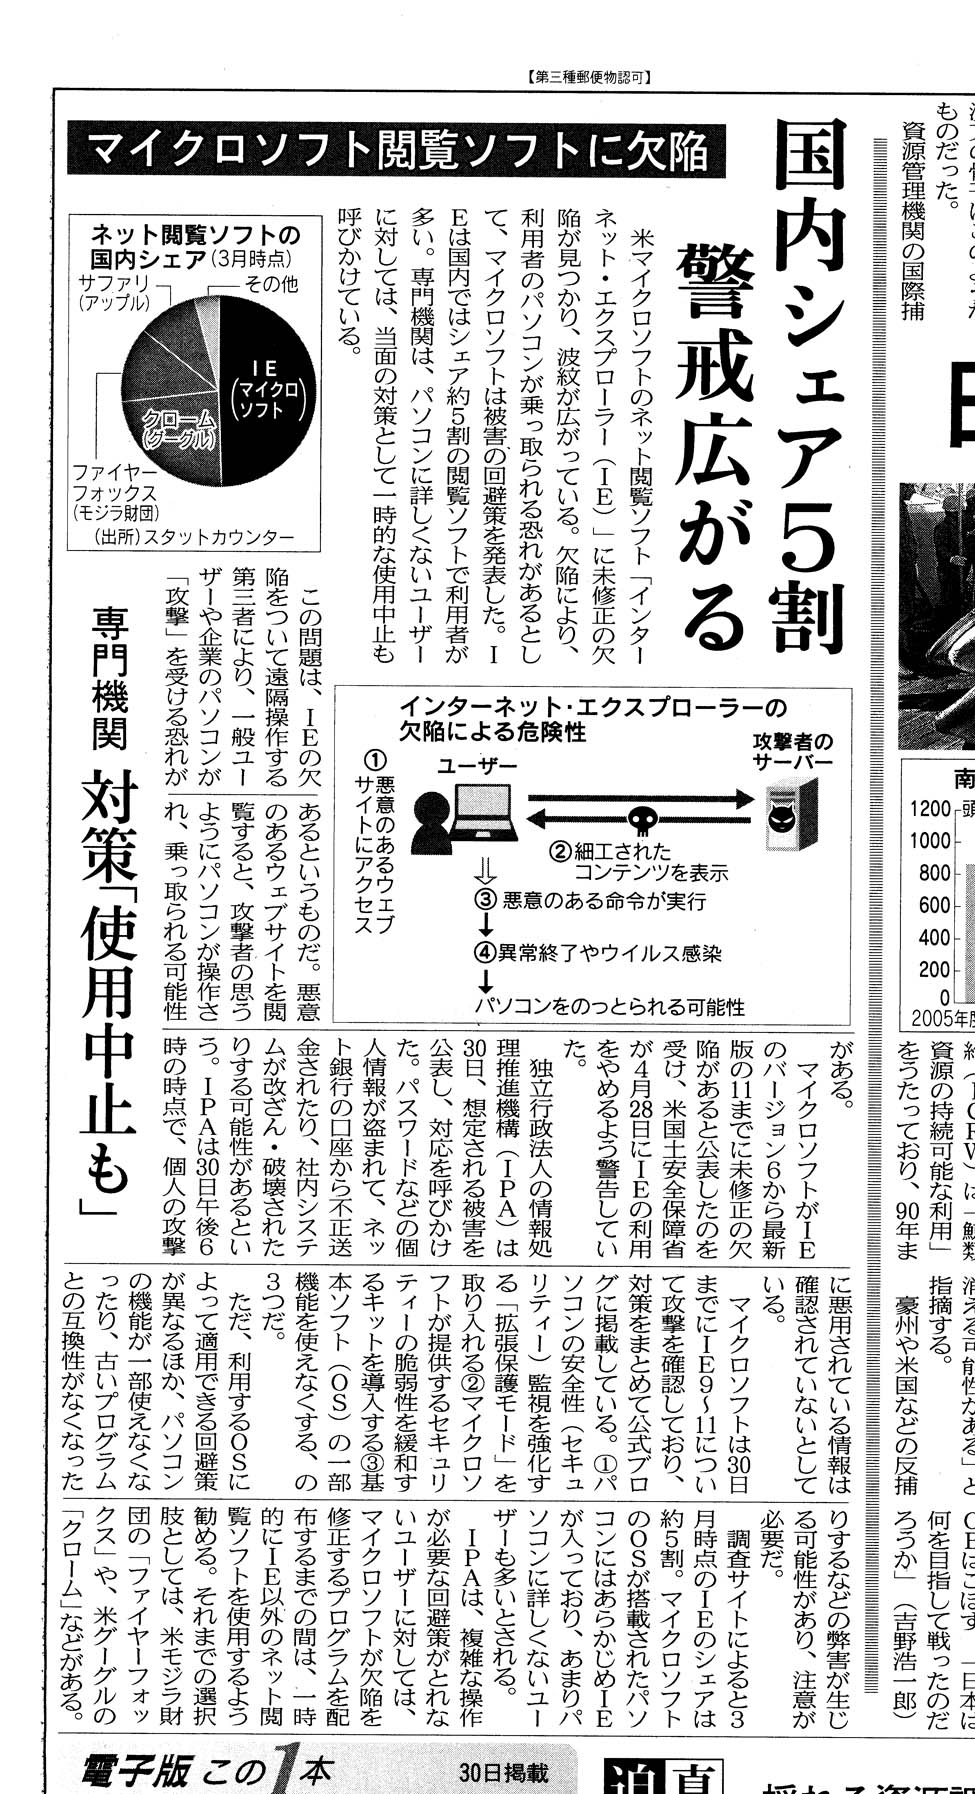 日本経済新聞 2014.5.1 朝刊 p.2